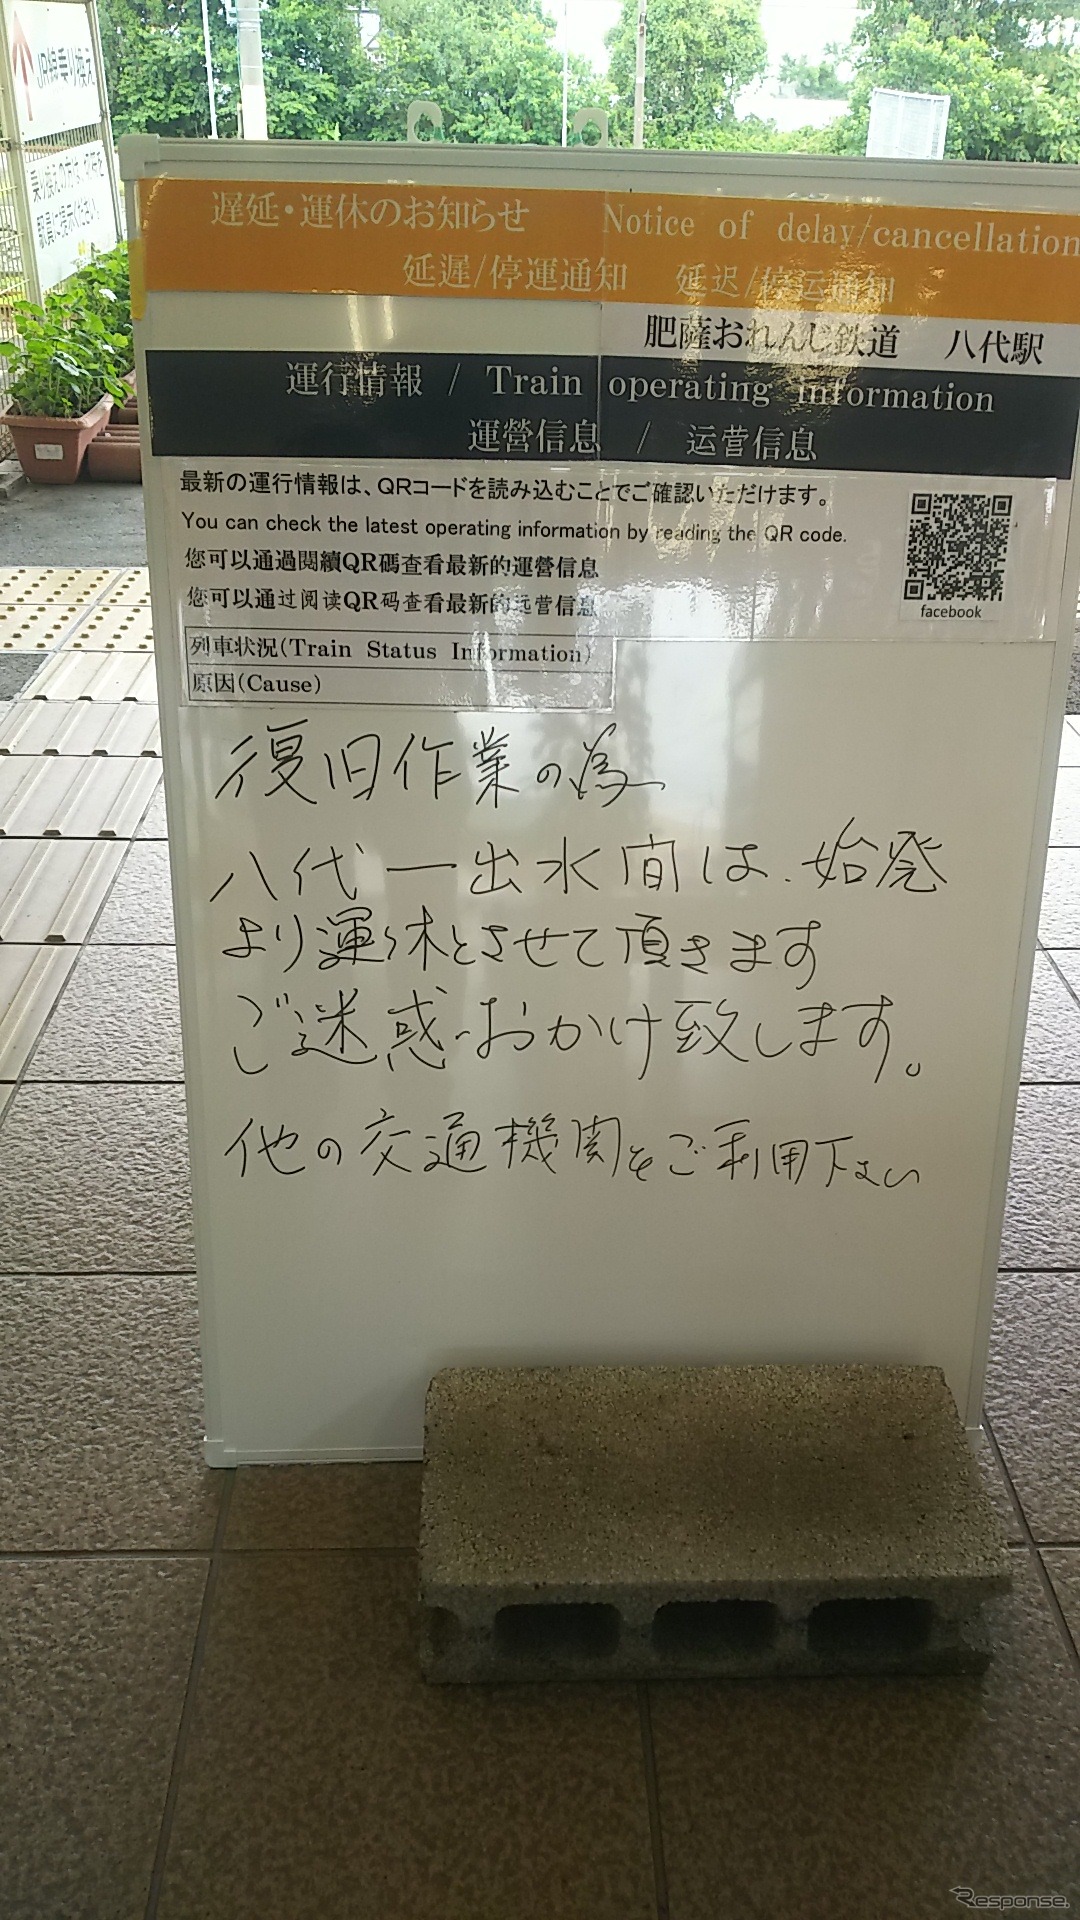 運行見合せを伝える肥薩おれんじ鉄道八代駅の掲示。